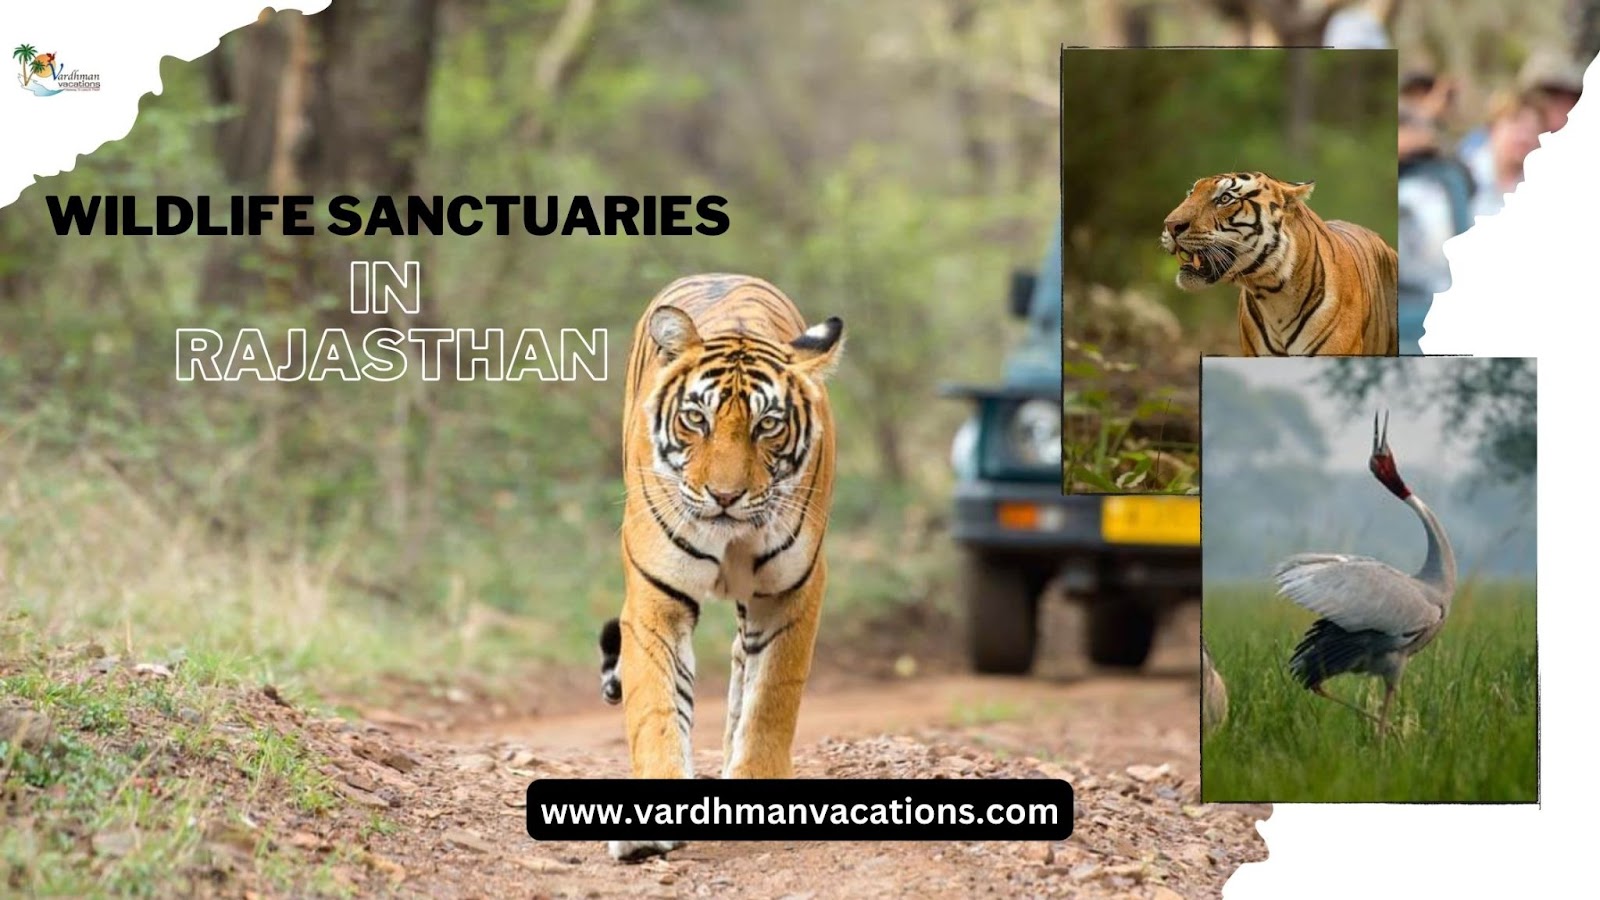 Wildlife sanctuaries in Rajasthan